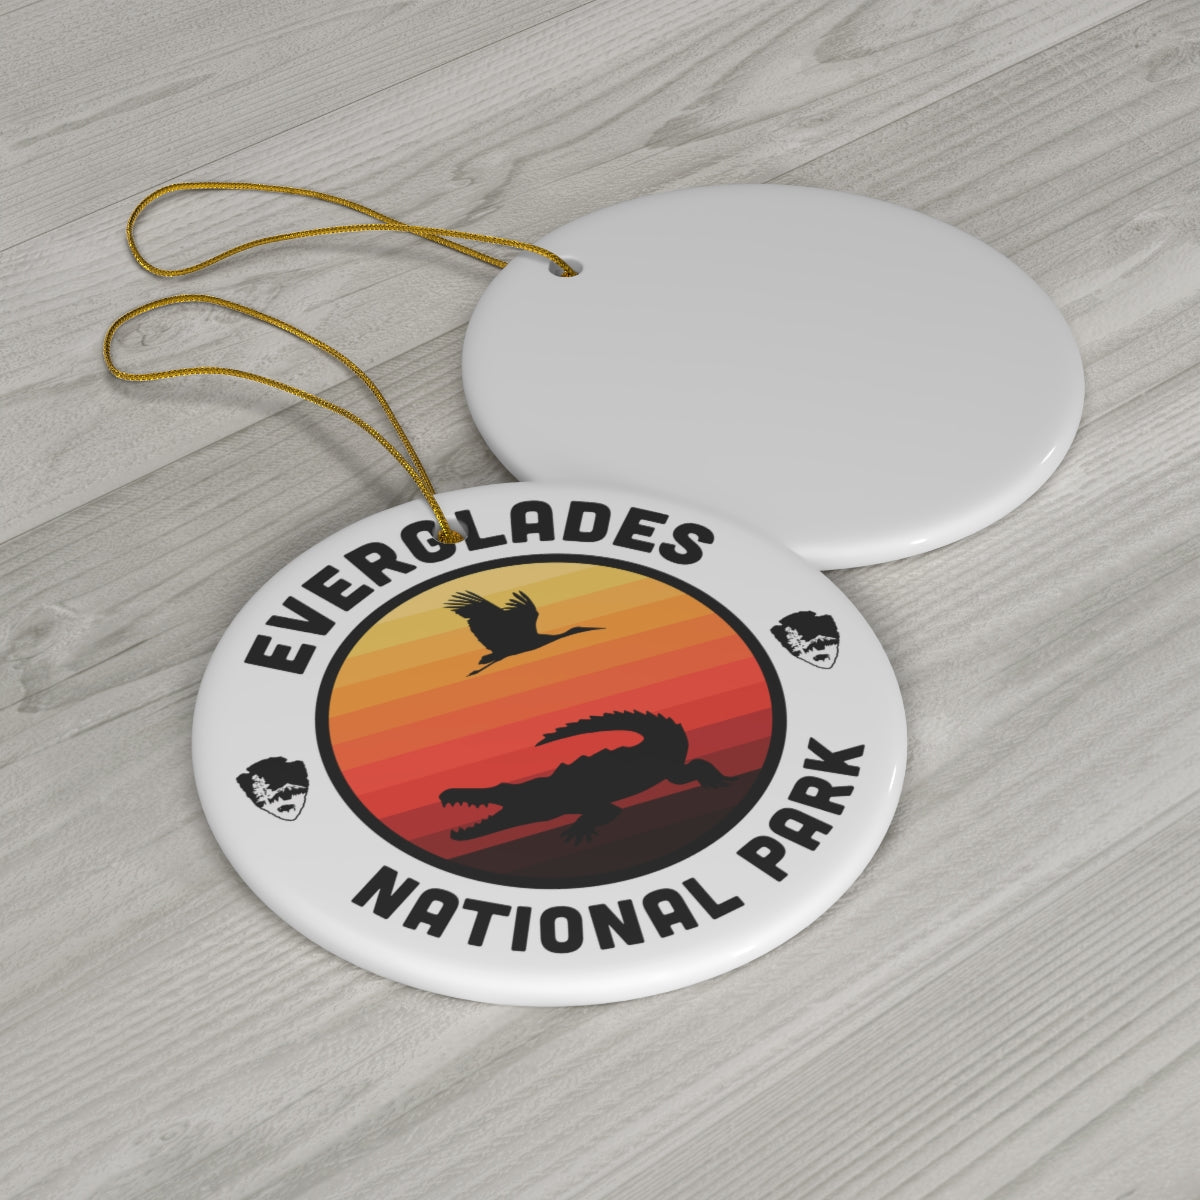 Everglades National Park Ornament - Round Emblem Design